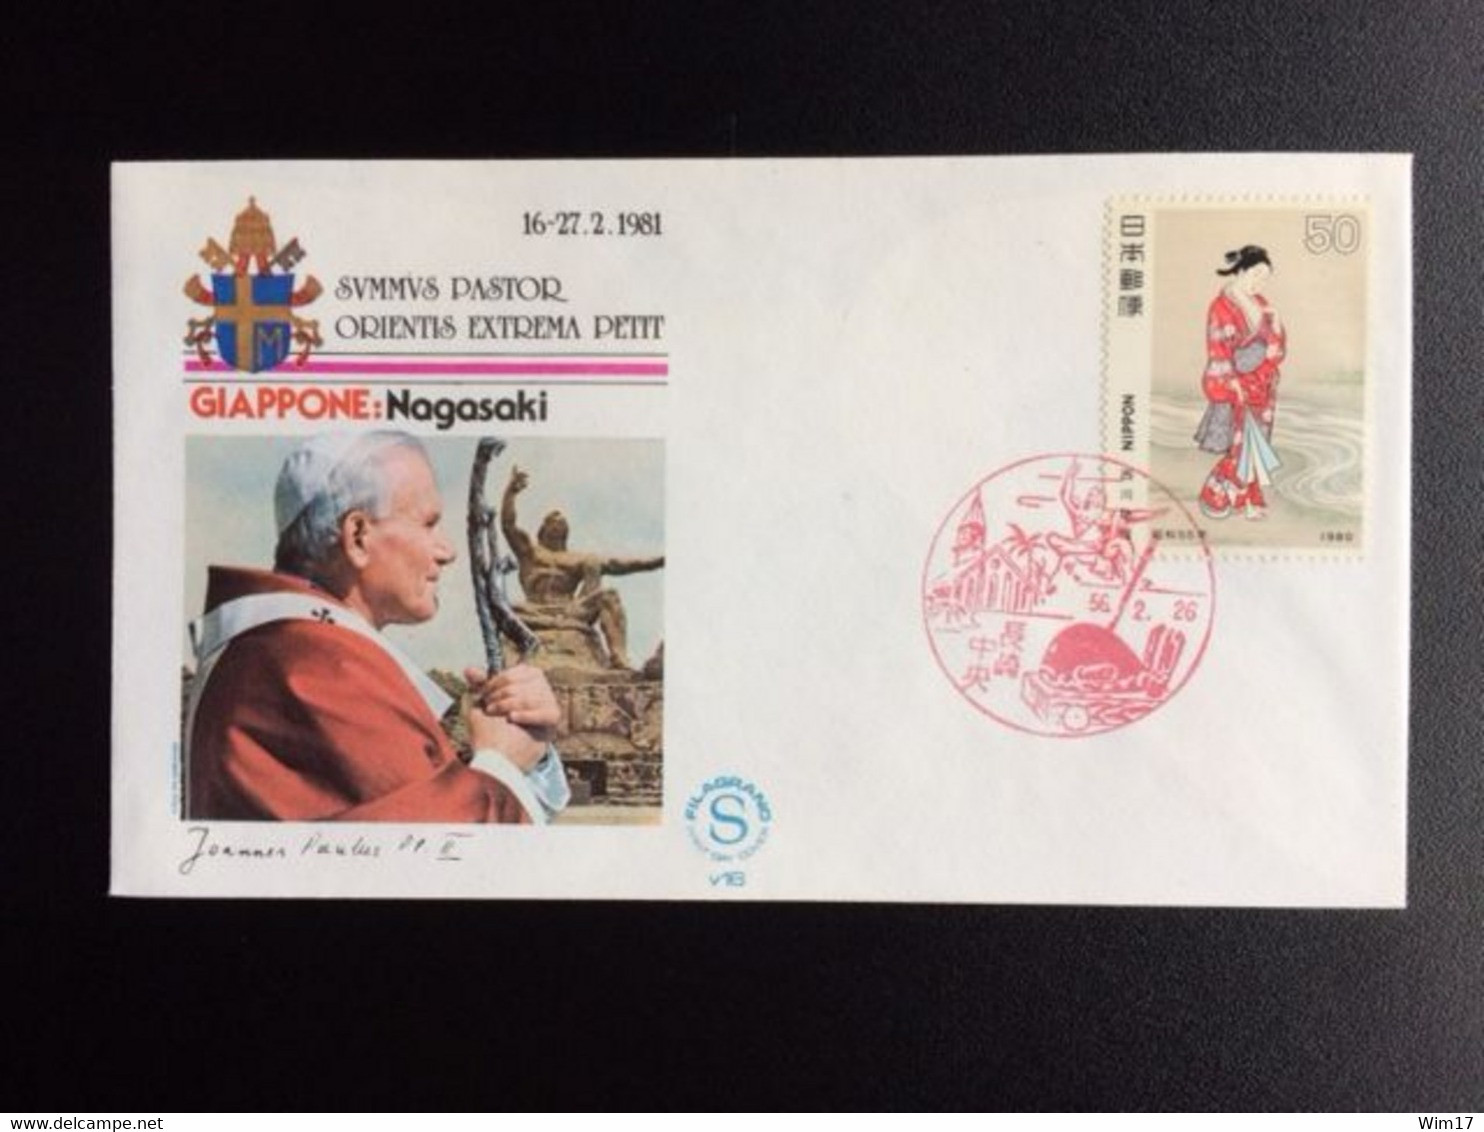 JAPAN 1981 POPE VISIT TO JAPAN 16-27 FEBR. 1981 - Sobres